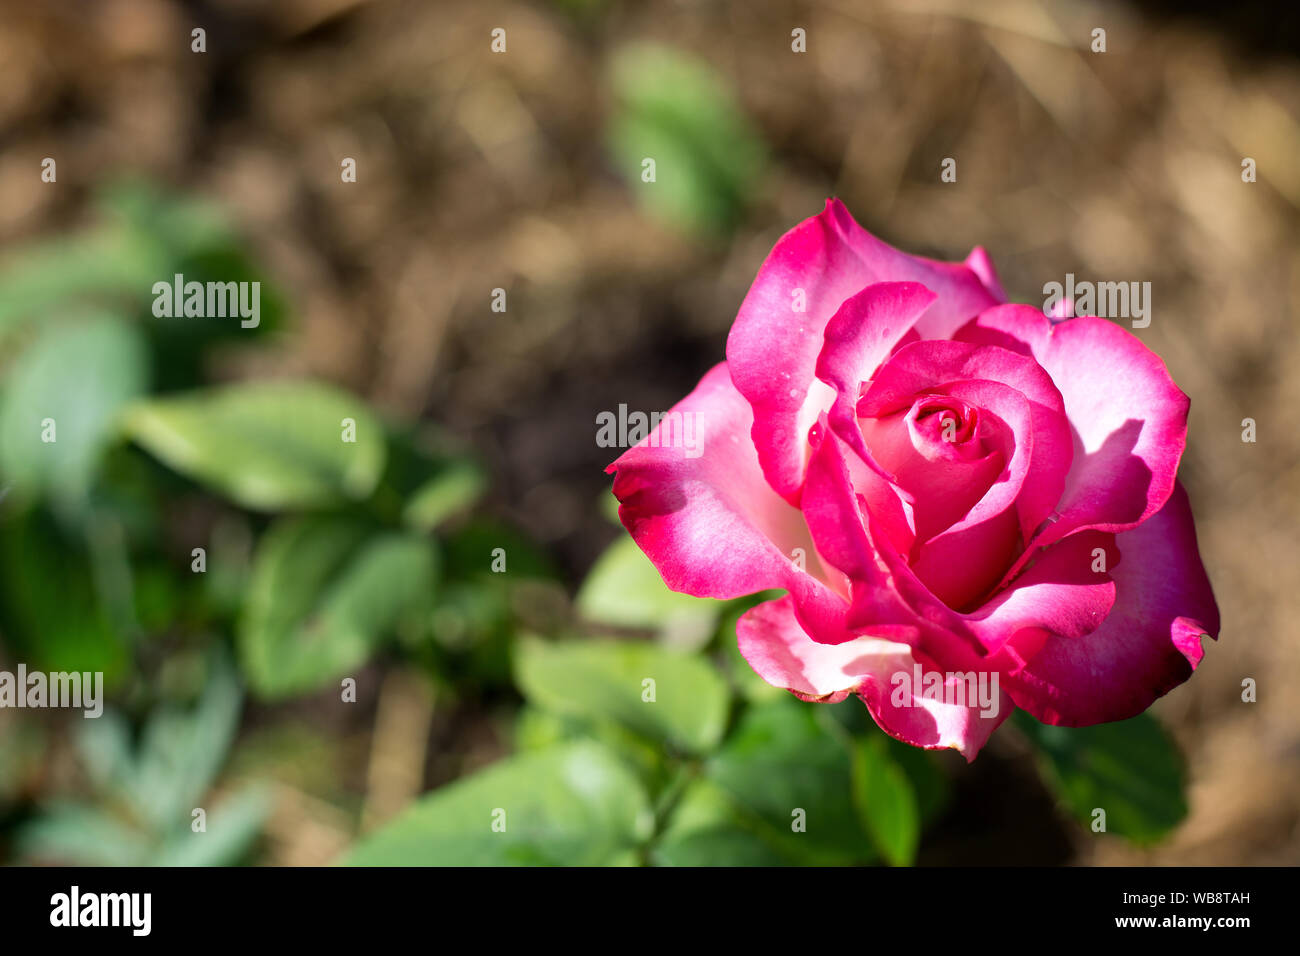 Rosa Rose Blume, Red Bud auf grünem Laub Hintergrund, isolierten Blume, Foto Stockfoto